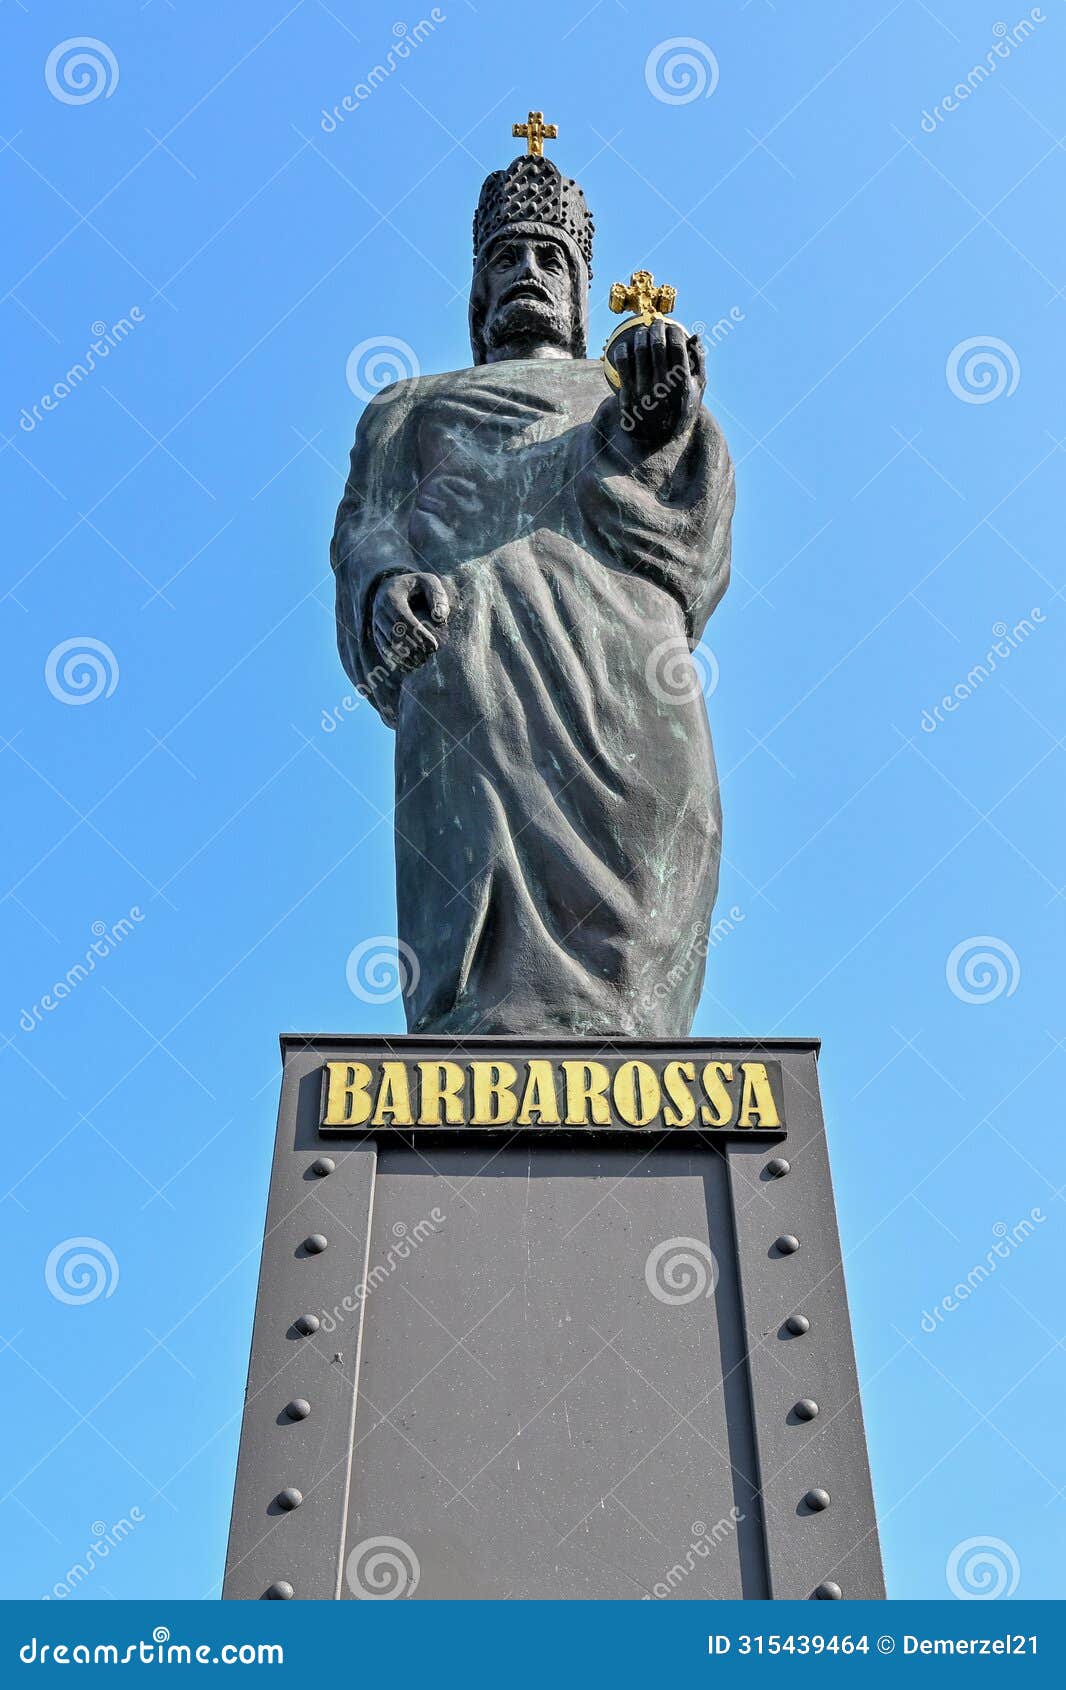 statue of barbarossa, hamburg, germany